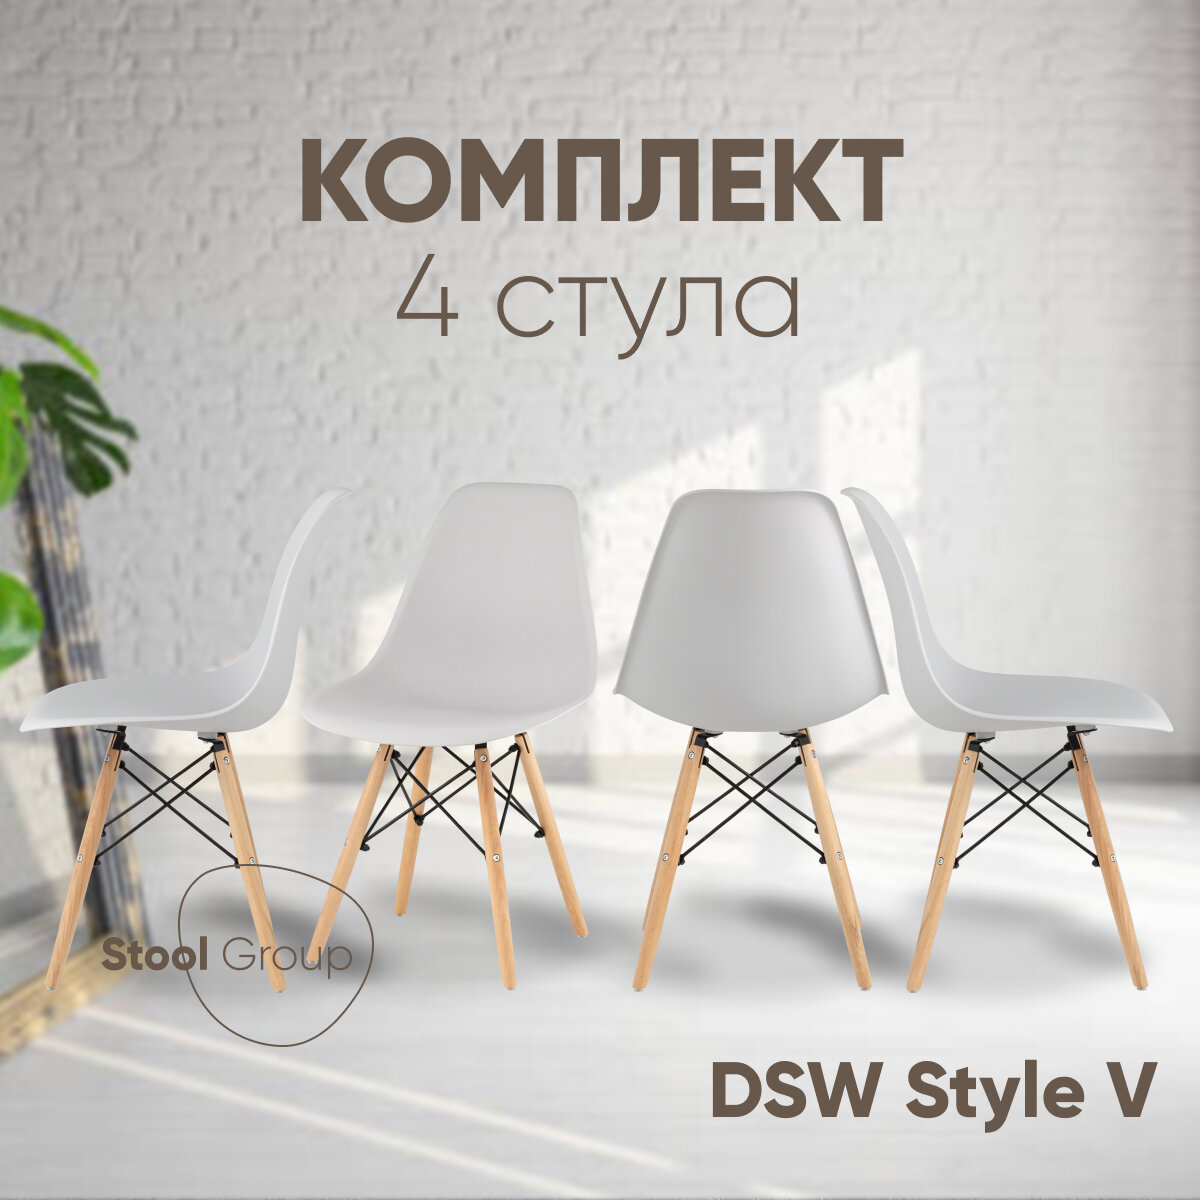 Стул для кухни DSW Style V, светло-серый, (комплект 4 стула)